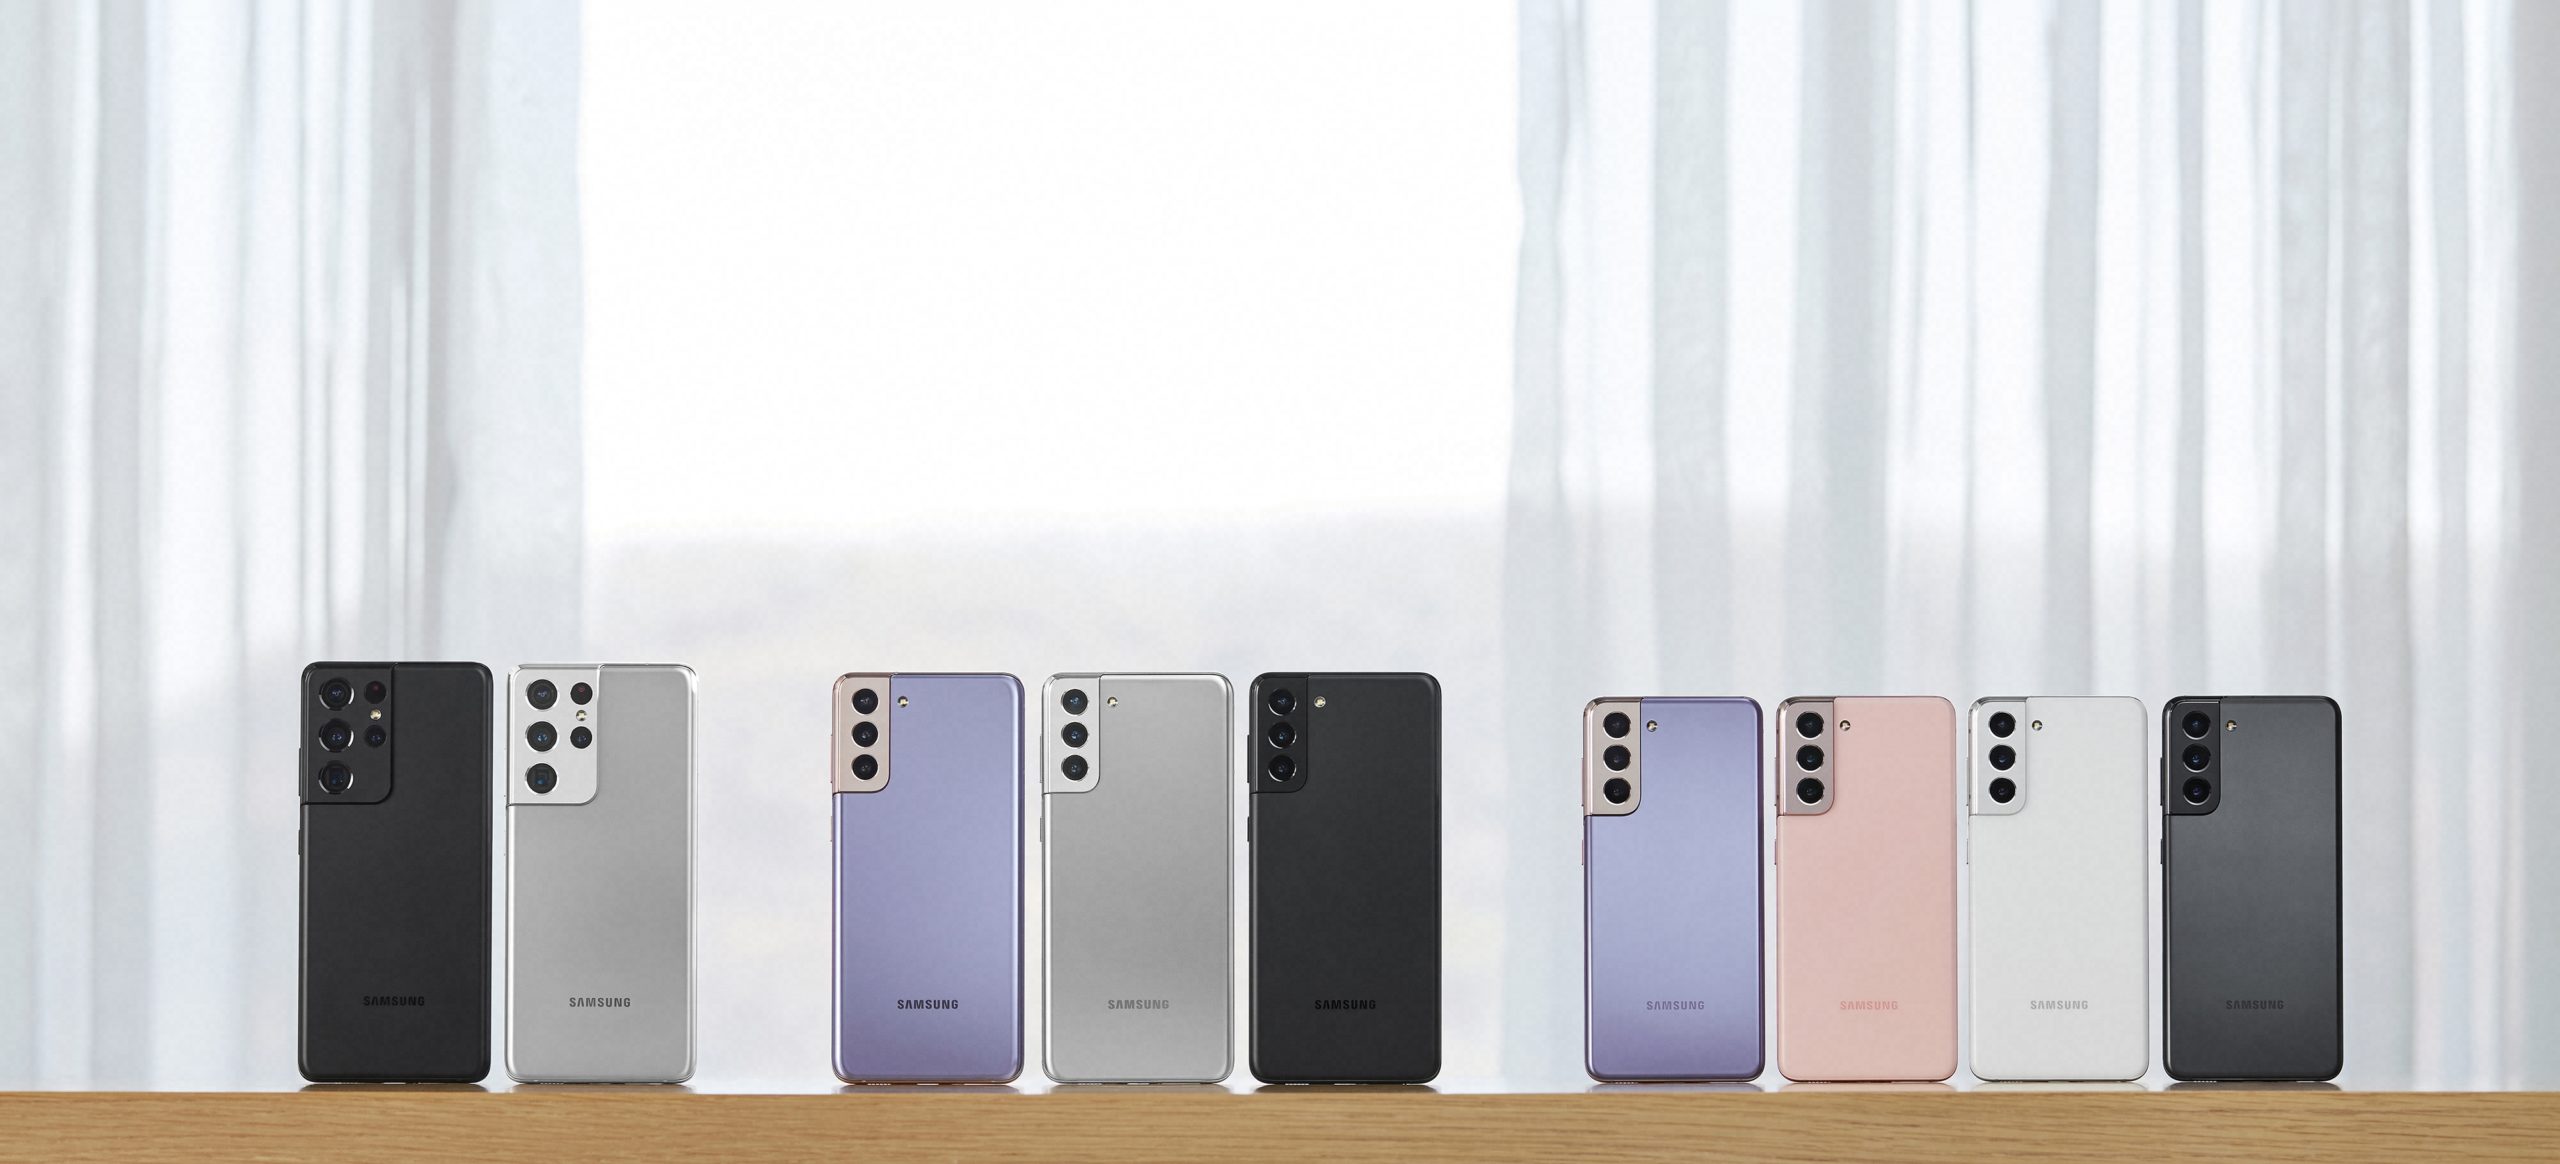 Samsung Galaxy S21 series color